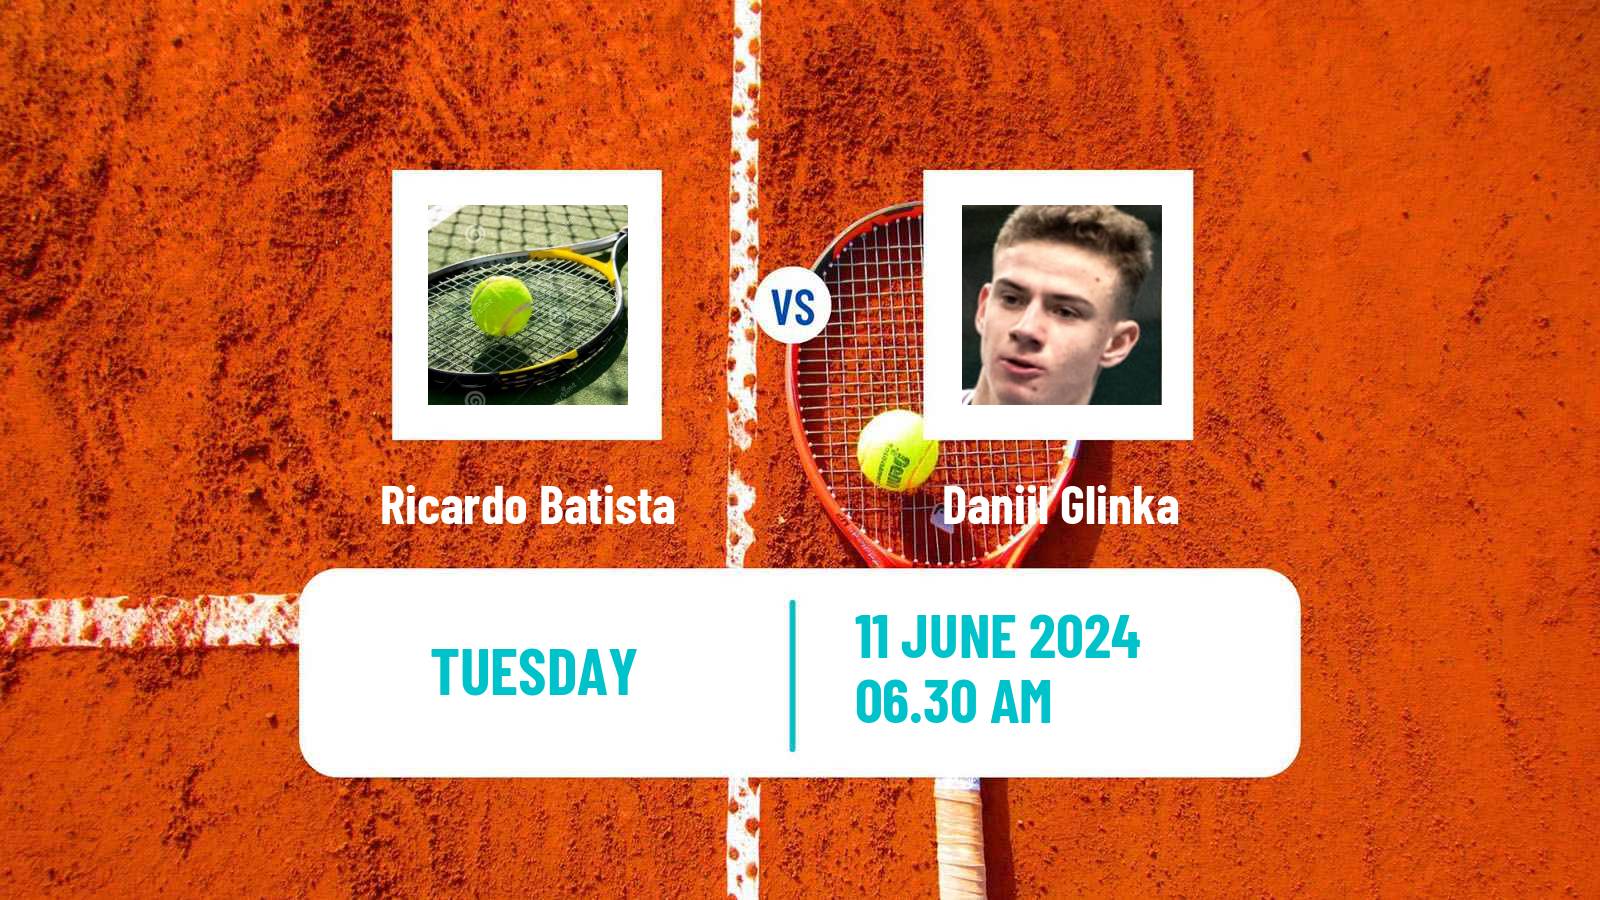 Tennis ITF M25 Elvas Men Ricardo Batista - Daniil Glinka